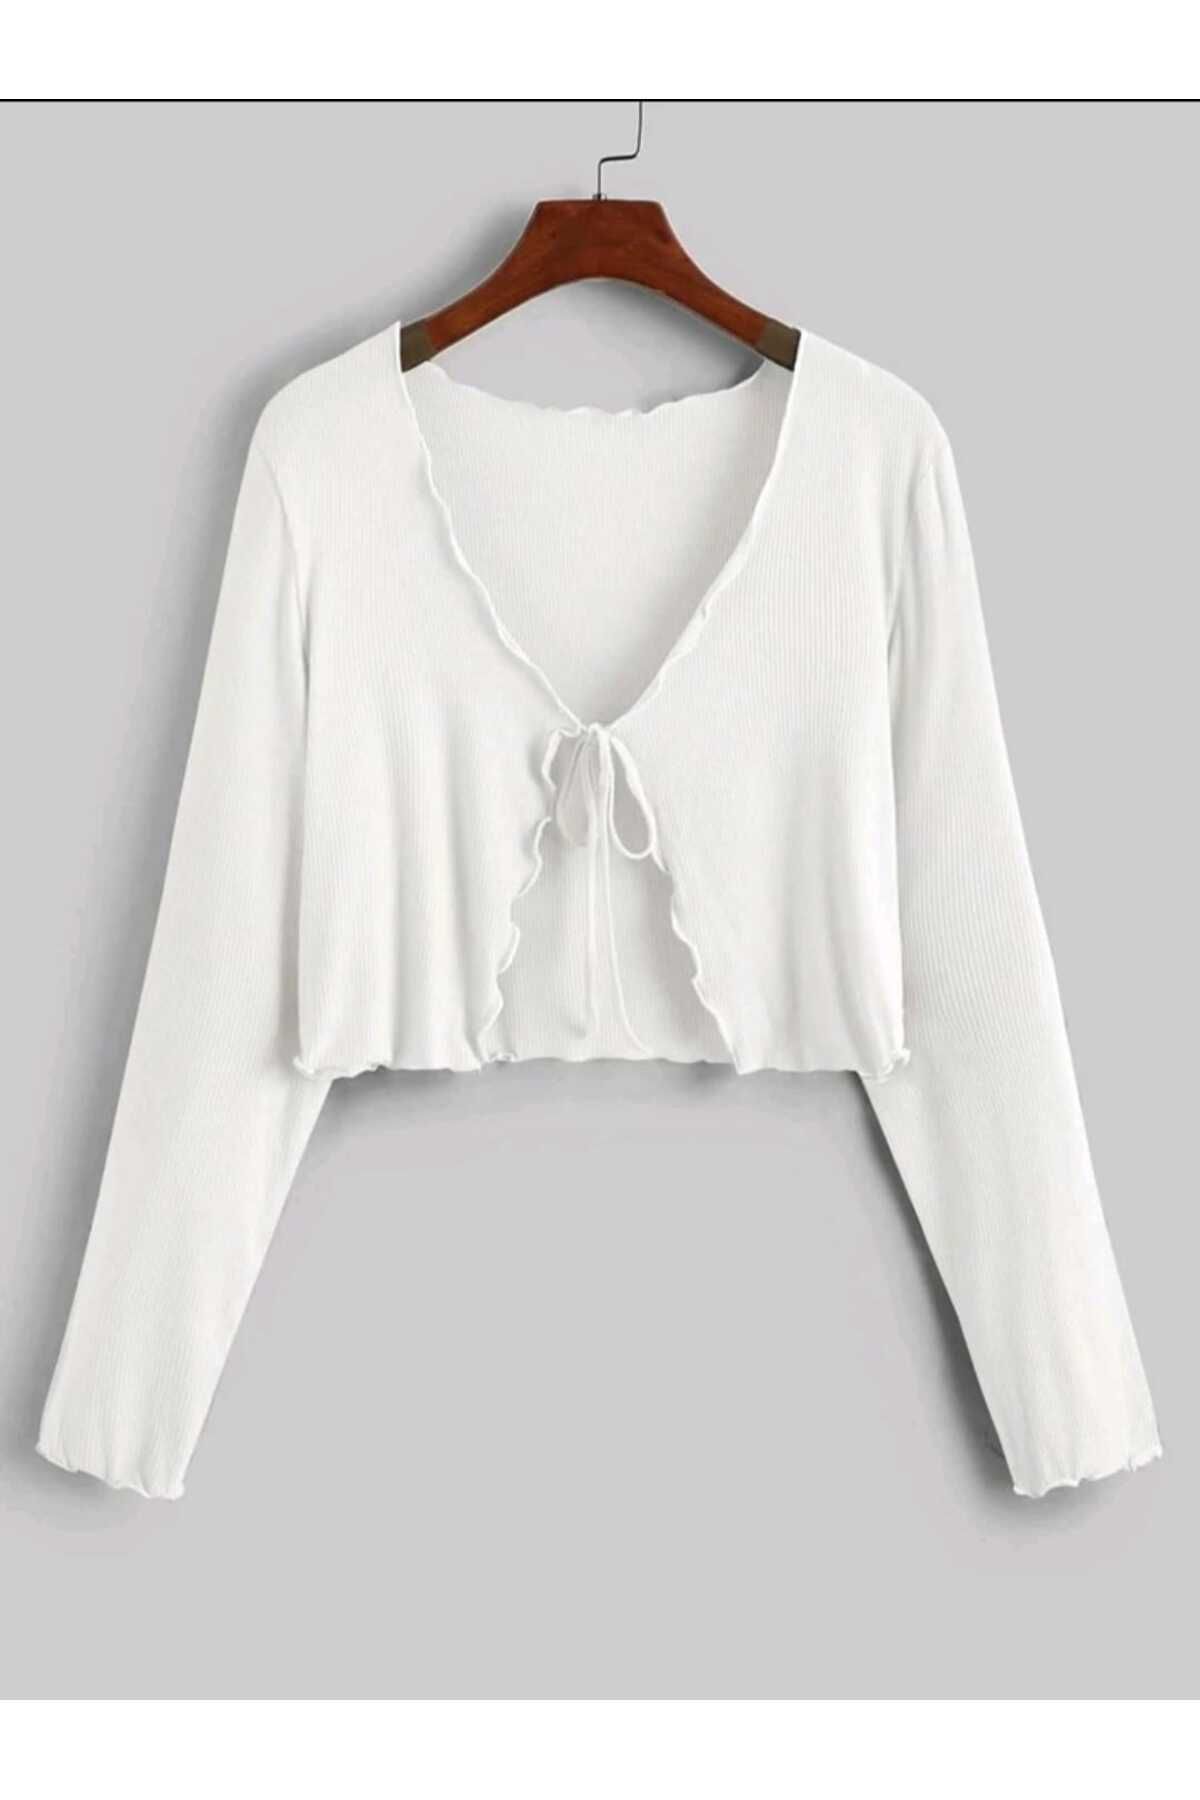 morche Kadın Bohem Hırka Yazlık Beyaz Bluz